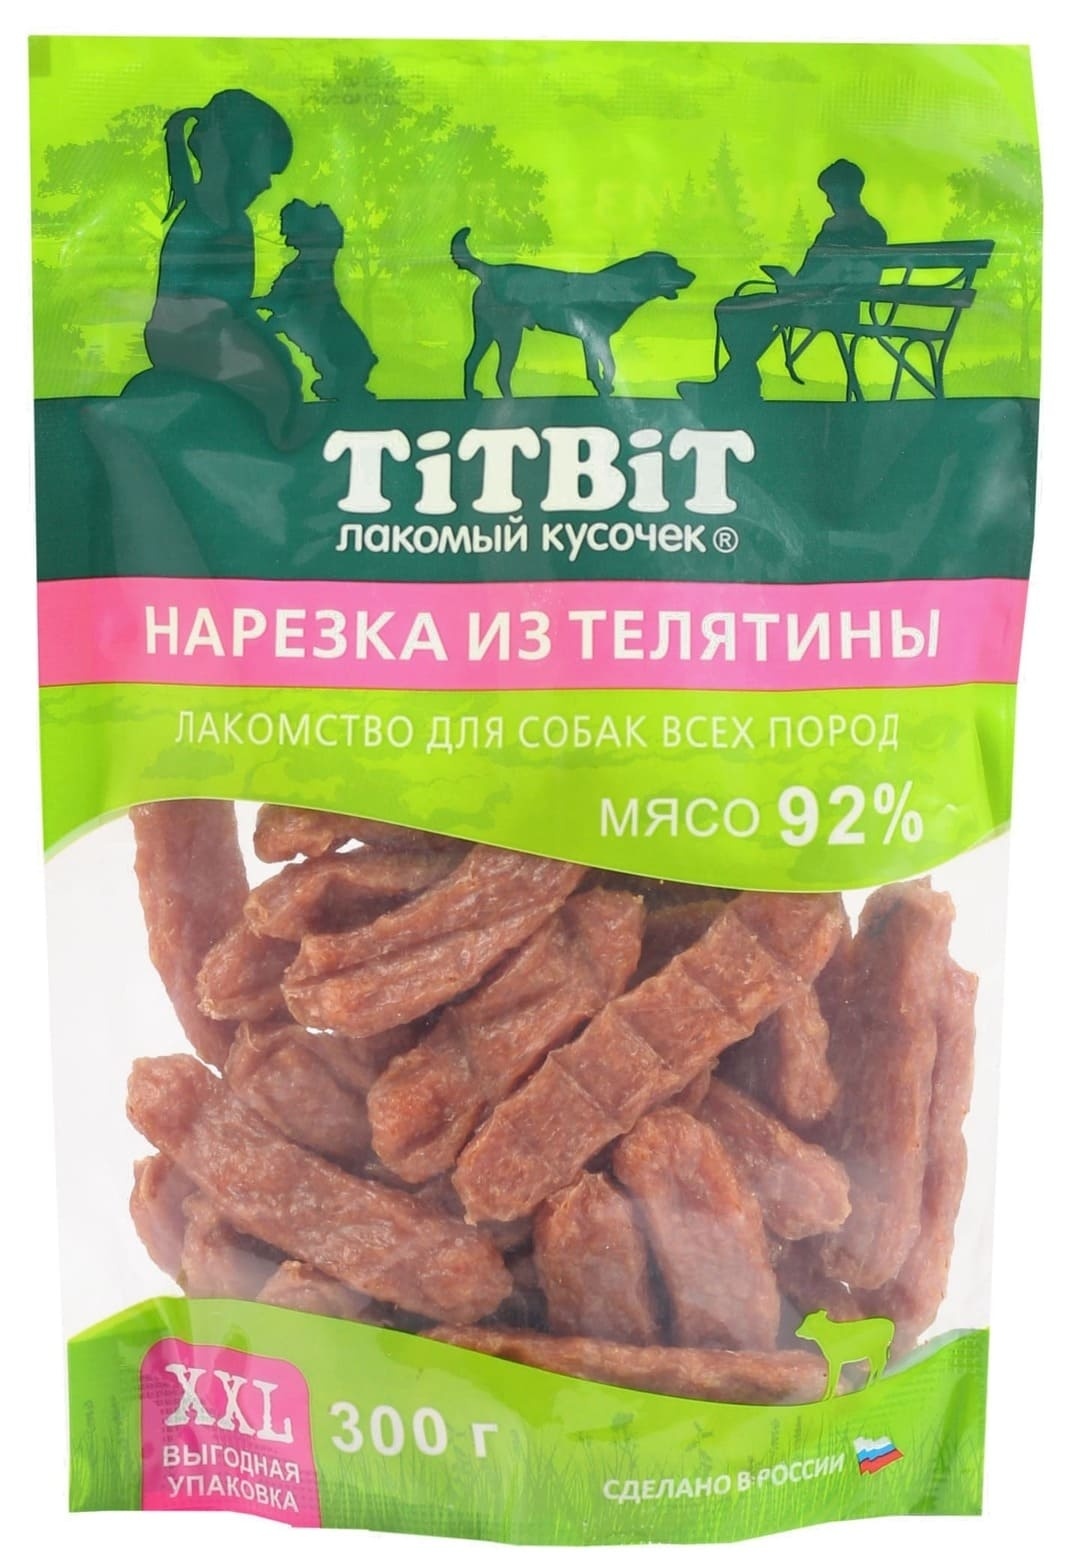 TiTBiT TiTBiT нарезка из телятины для собак всех пород, выгодная упаковка XXL (300 г) цена и фото